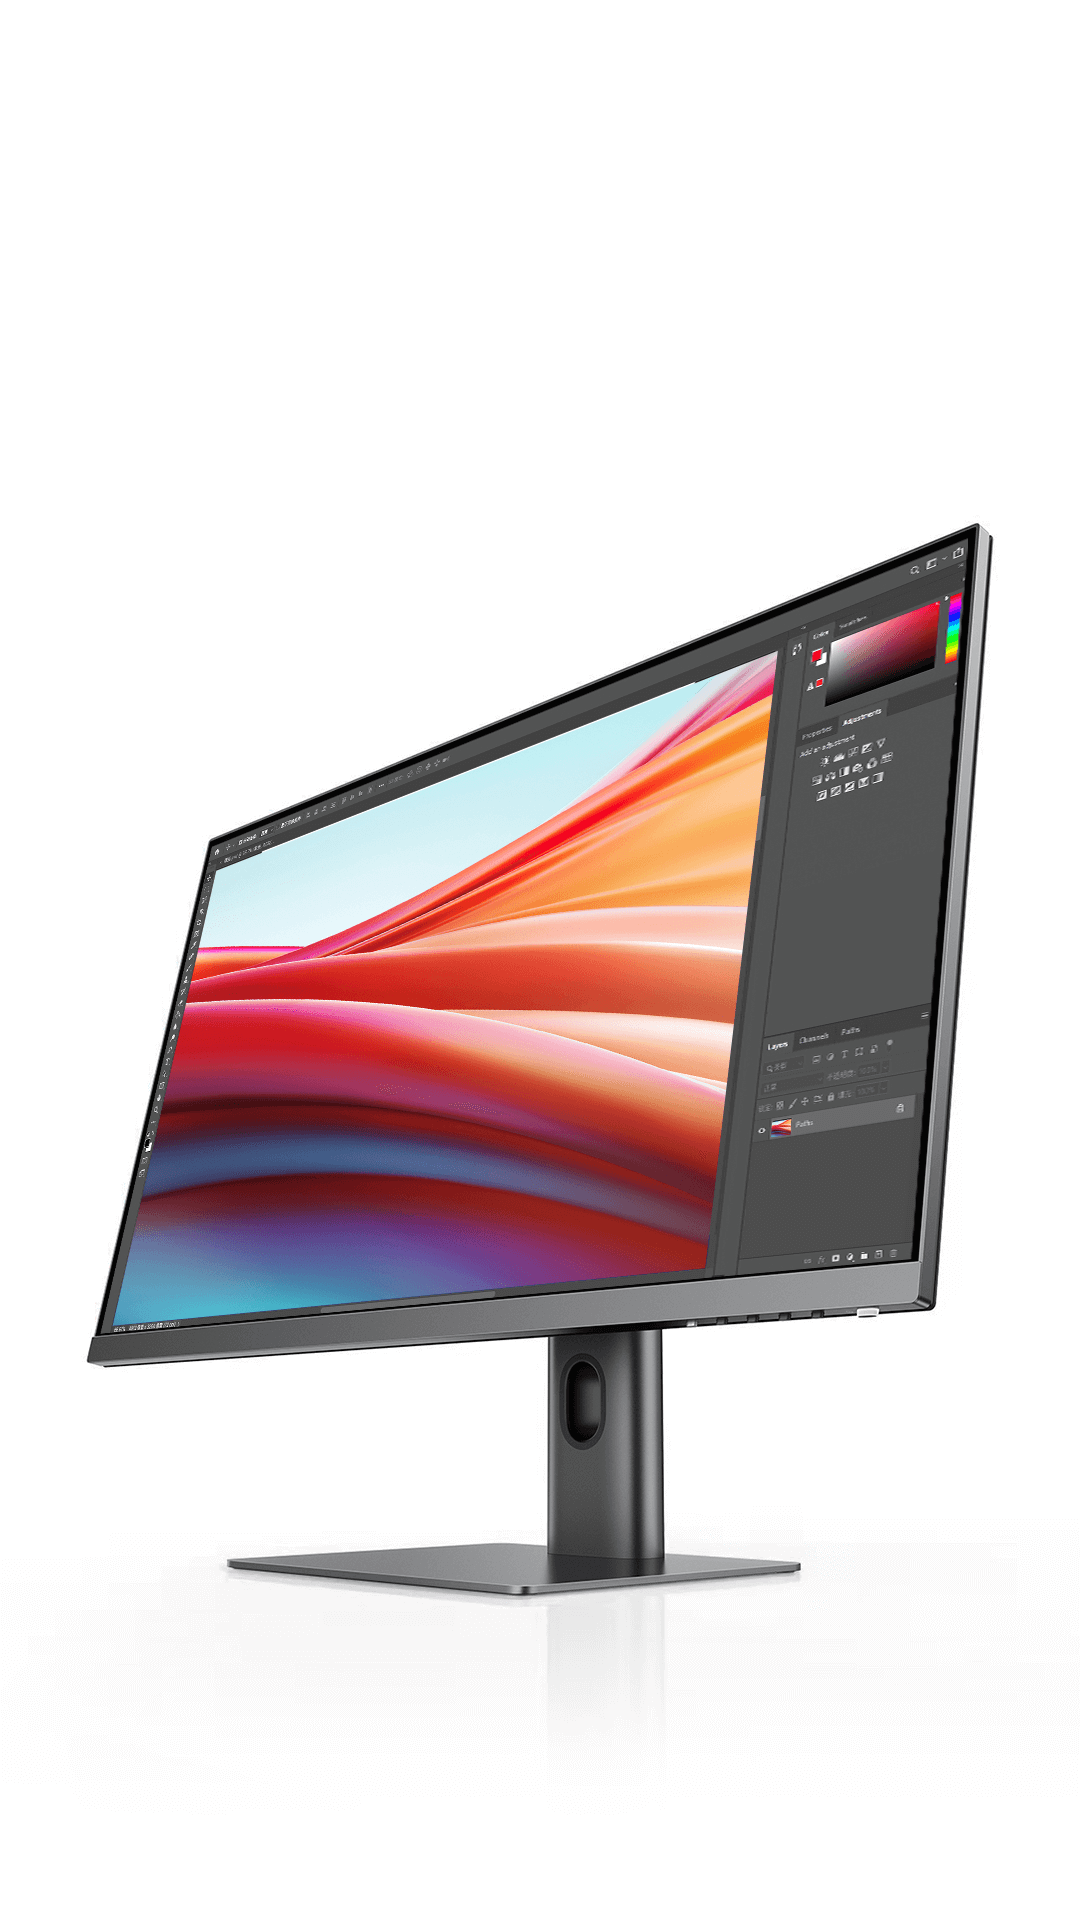 Xiaomi presenta un monitor de 27 pulgadas tirado de precio